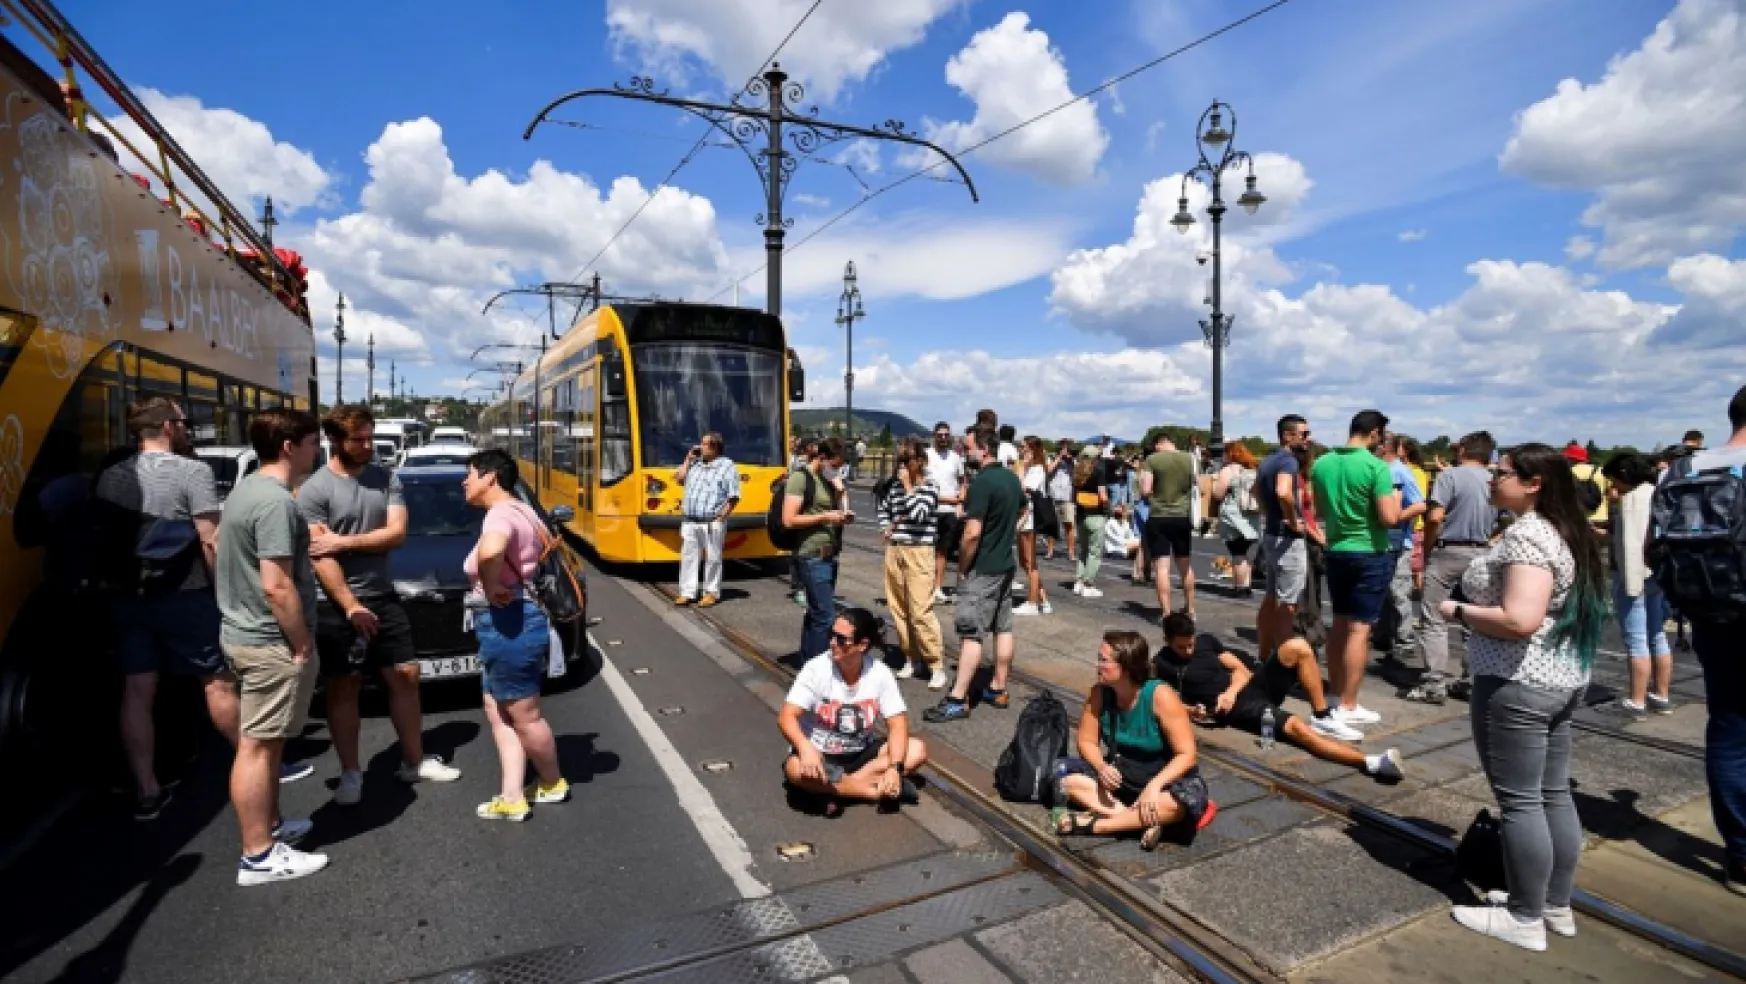 Macaristan'da vergi artışı potestosu: Bini aşkın gösterici köprü kapattı